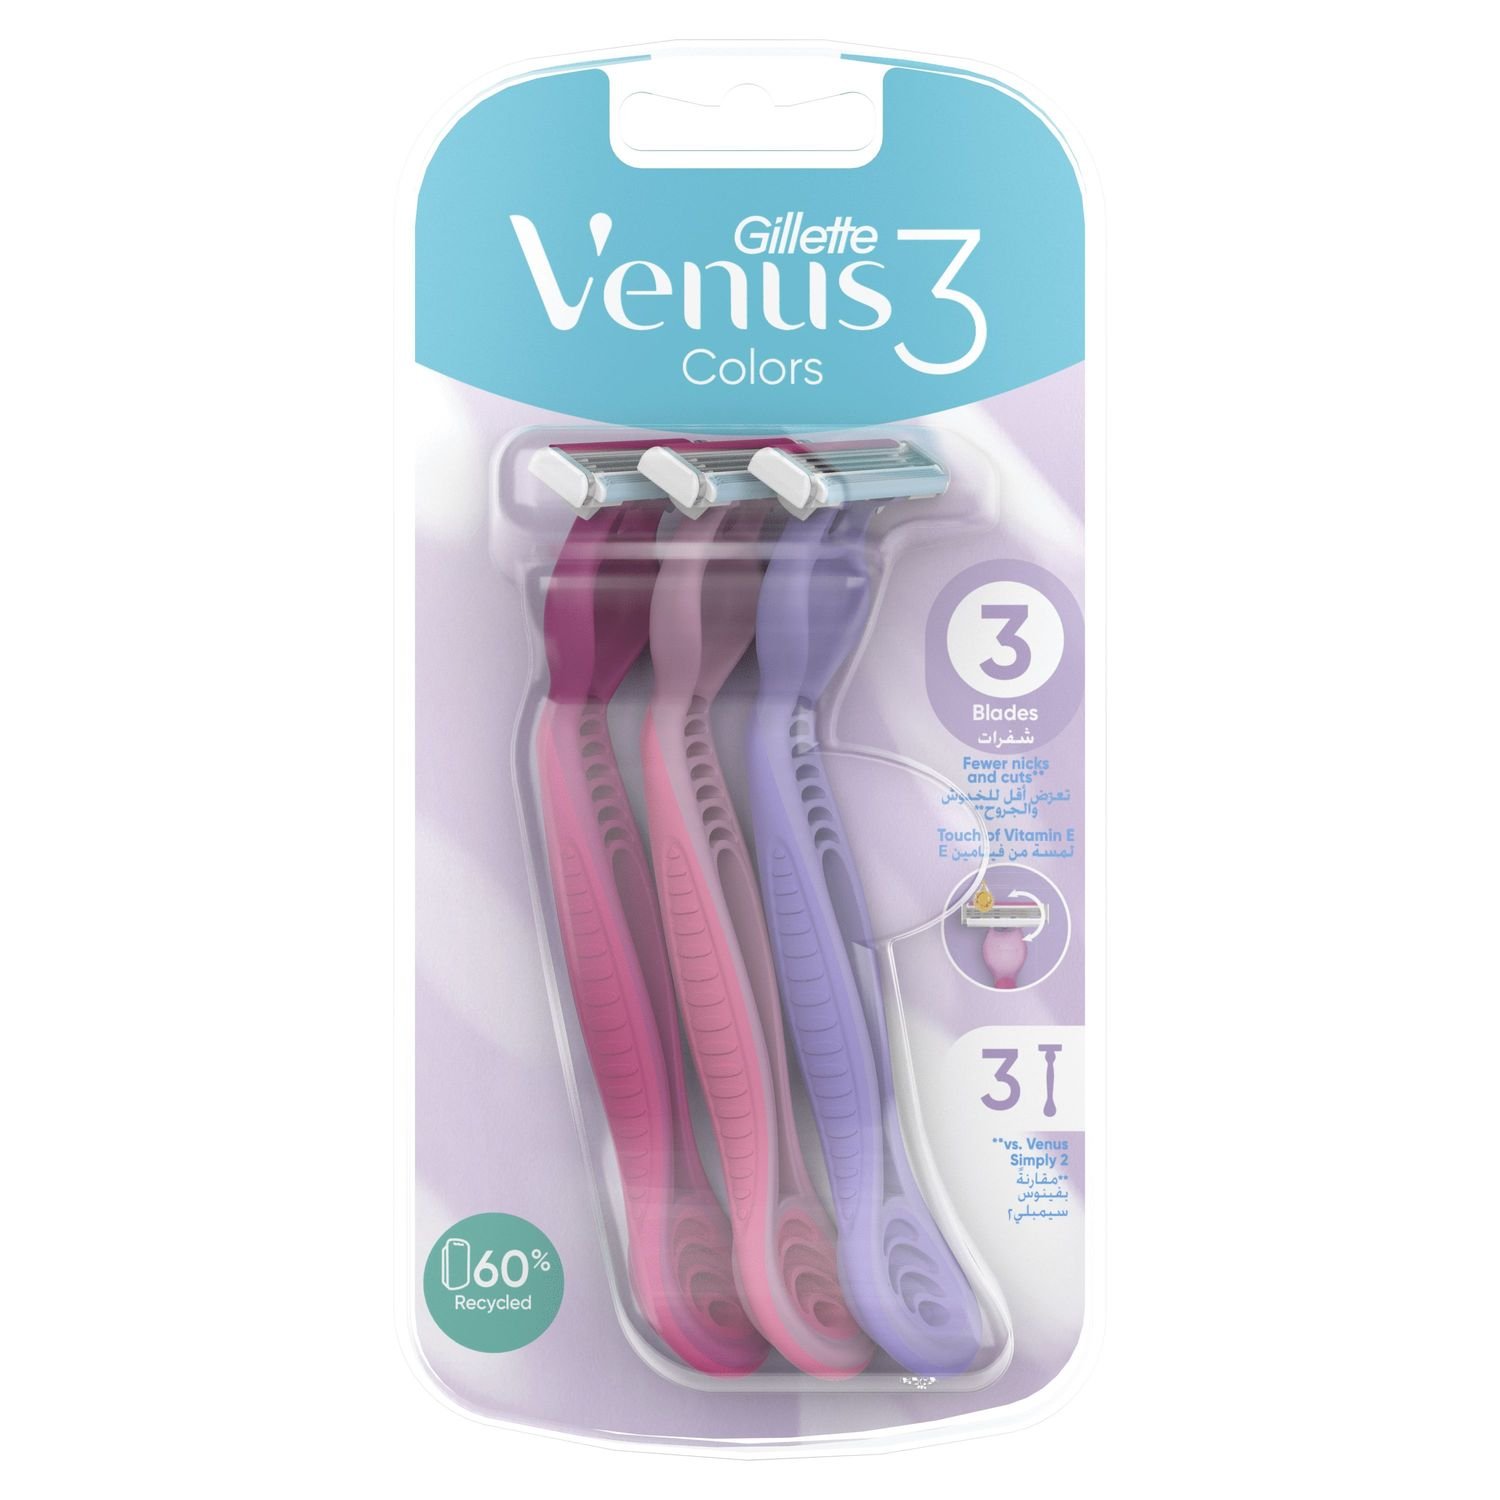 Одноразовые станки для бритья Gillette Venus 3 Colors, 3 шт. - фото 2